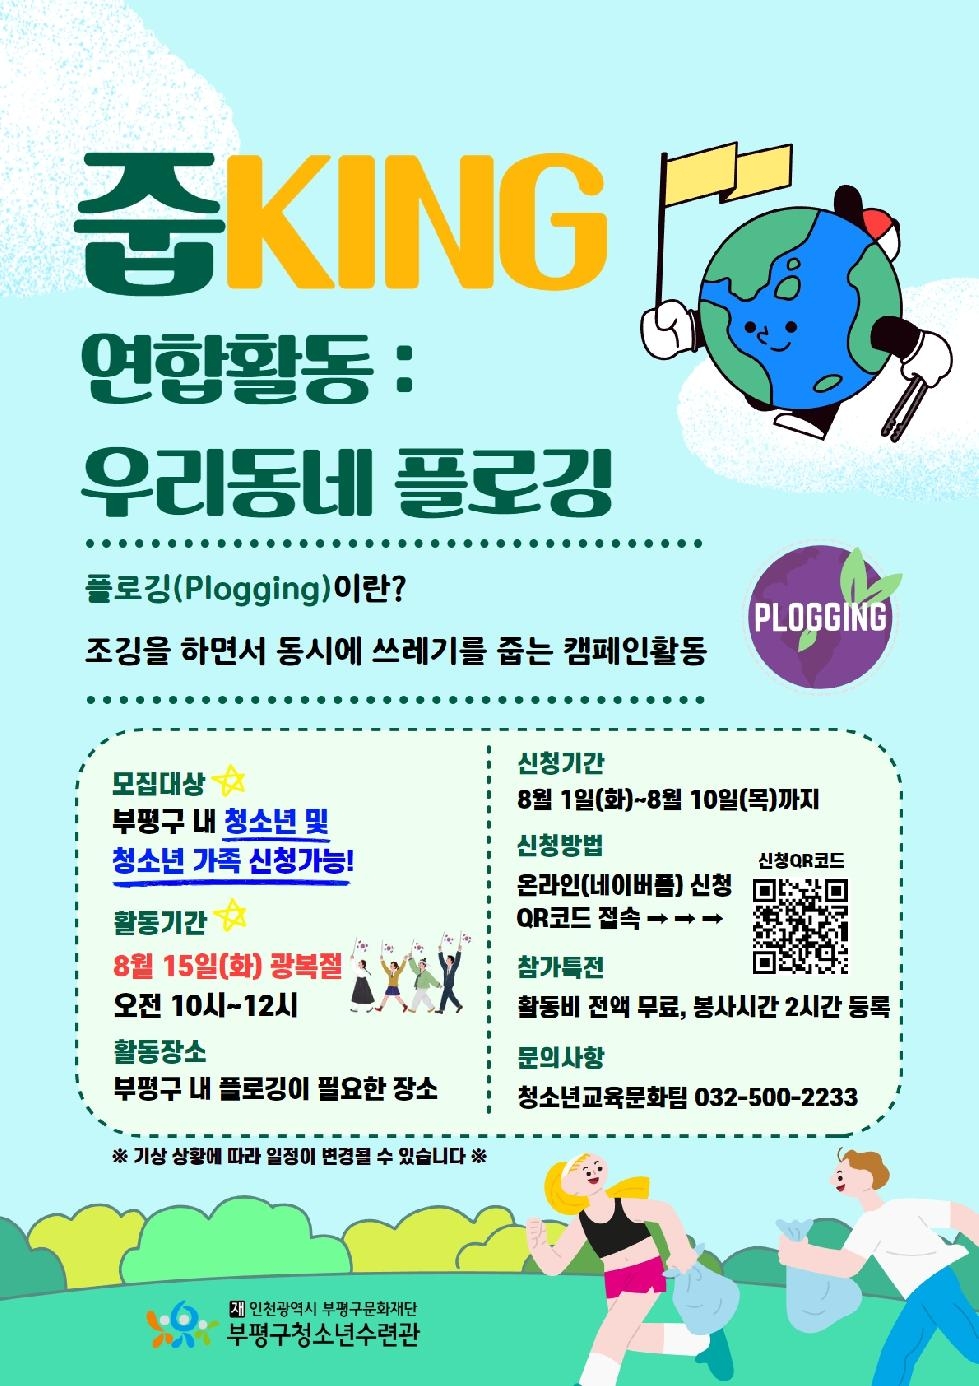 인천 부평구 청소년수련관, ‘줍KING’ 우리동네 플로깅 참가자 모집